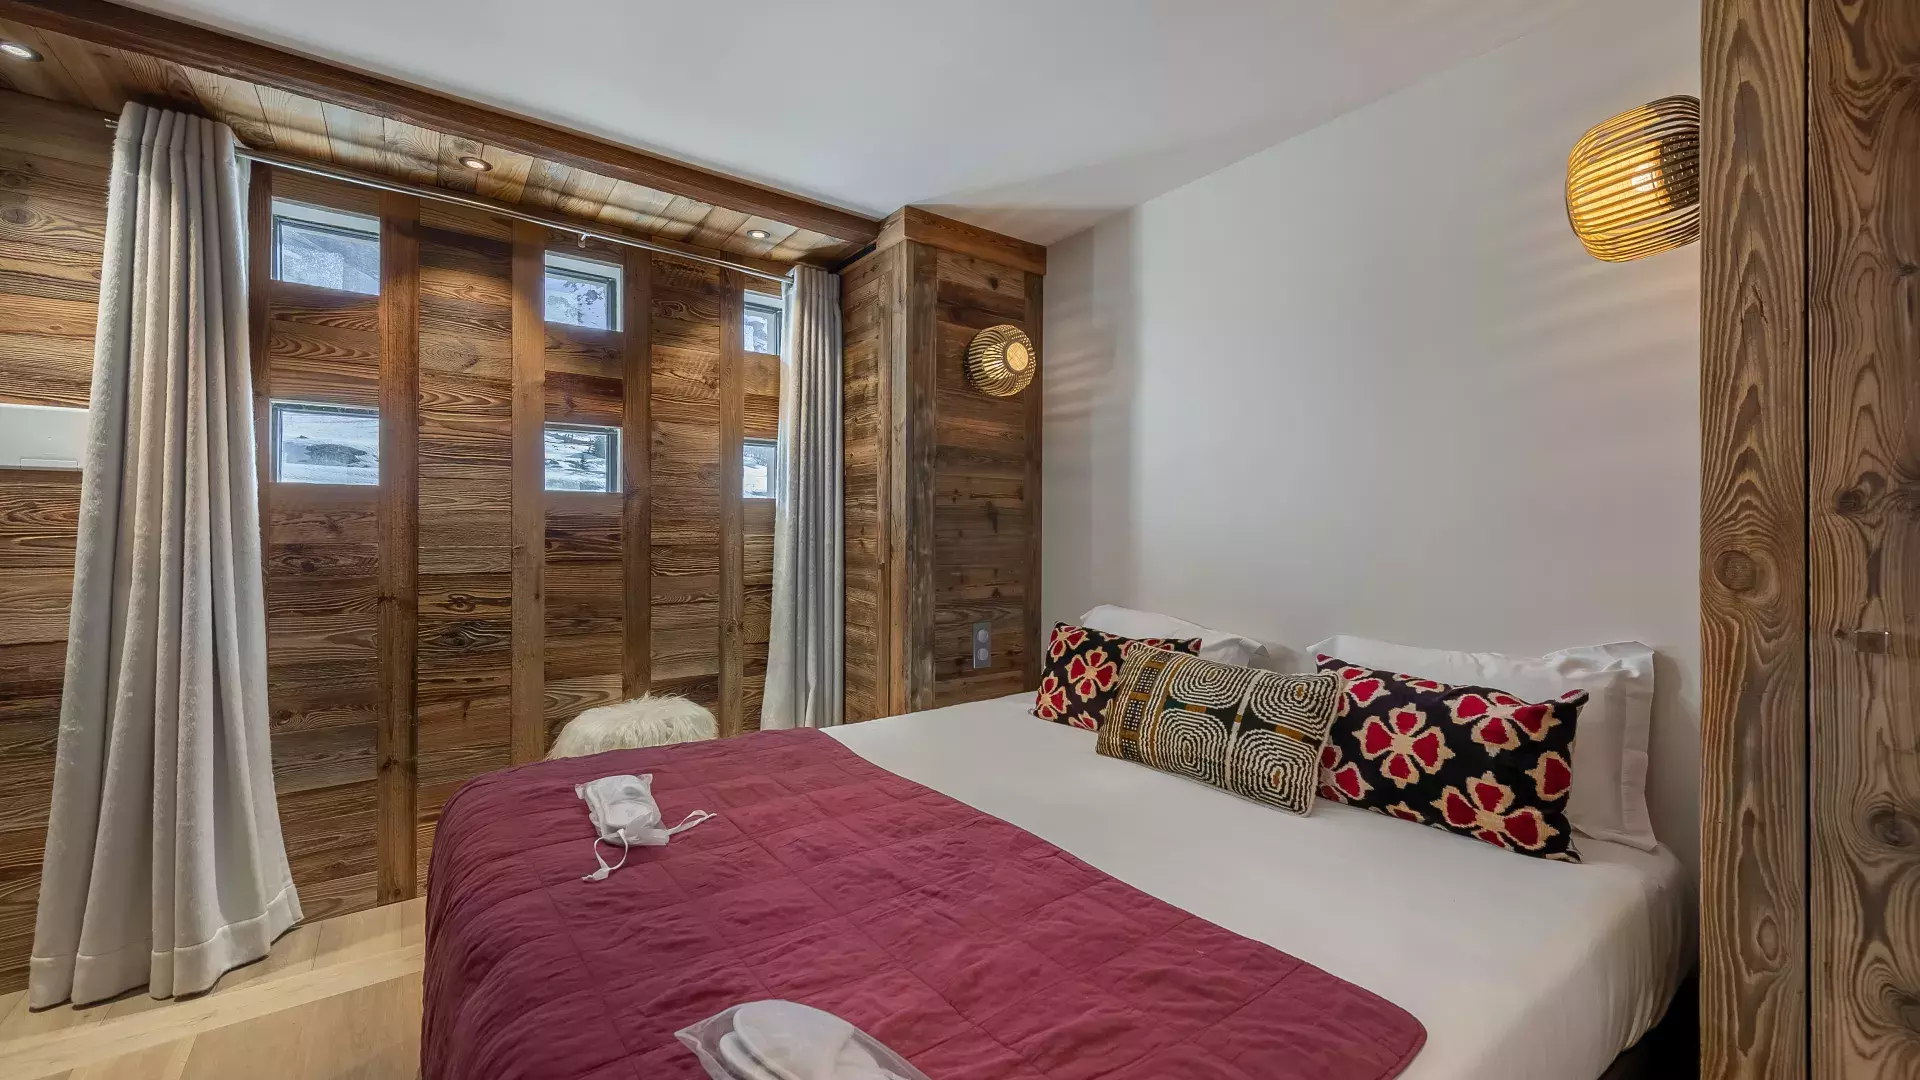 Appartement Fusée - Location chalets Covarel - Val d'Isère Alpes - France – chambre 1